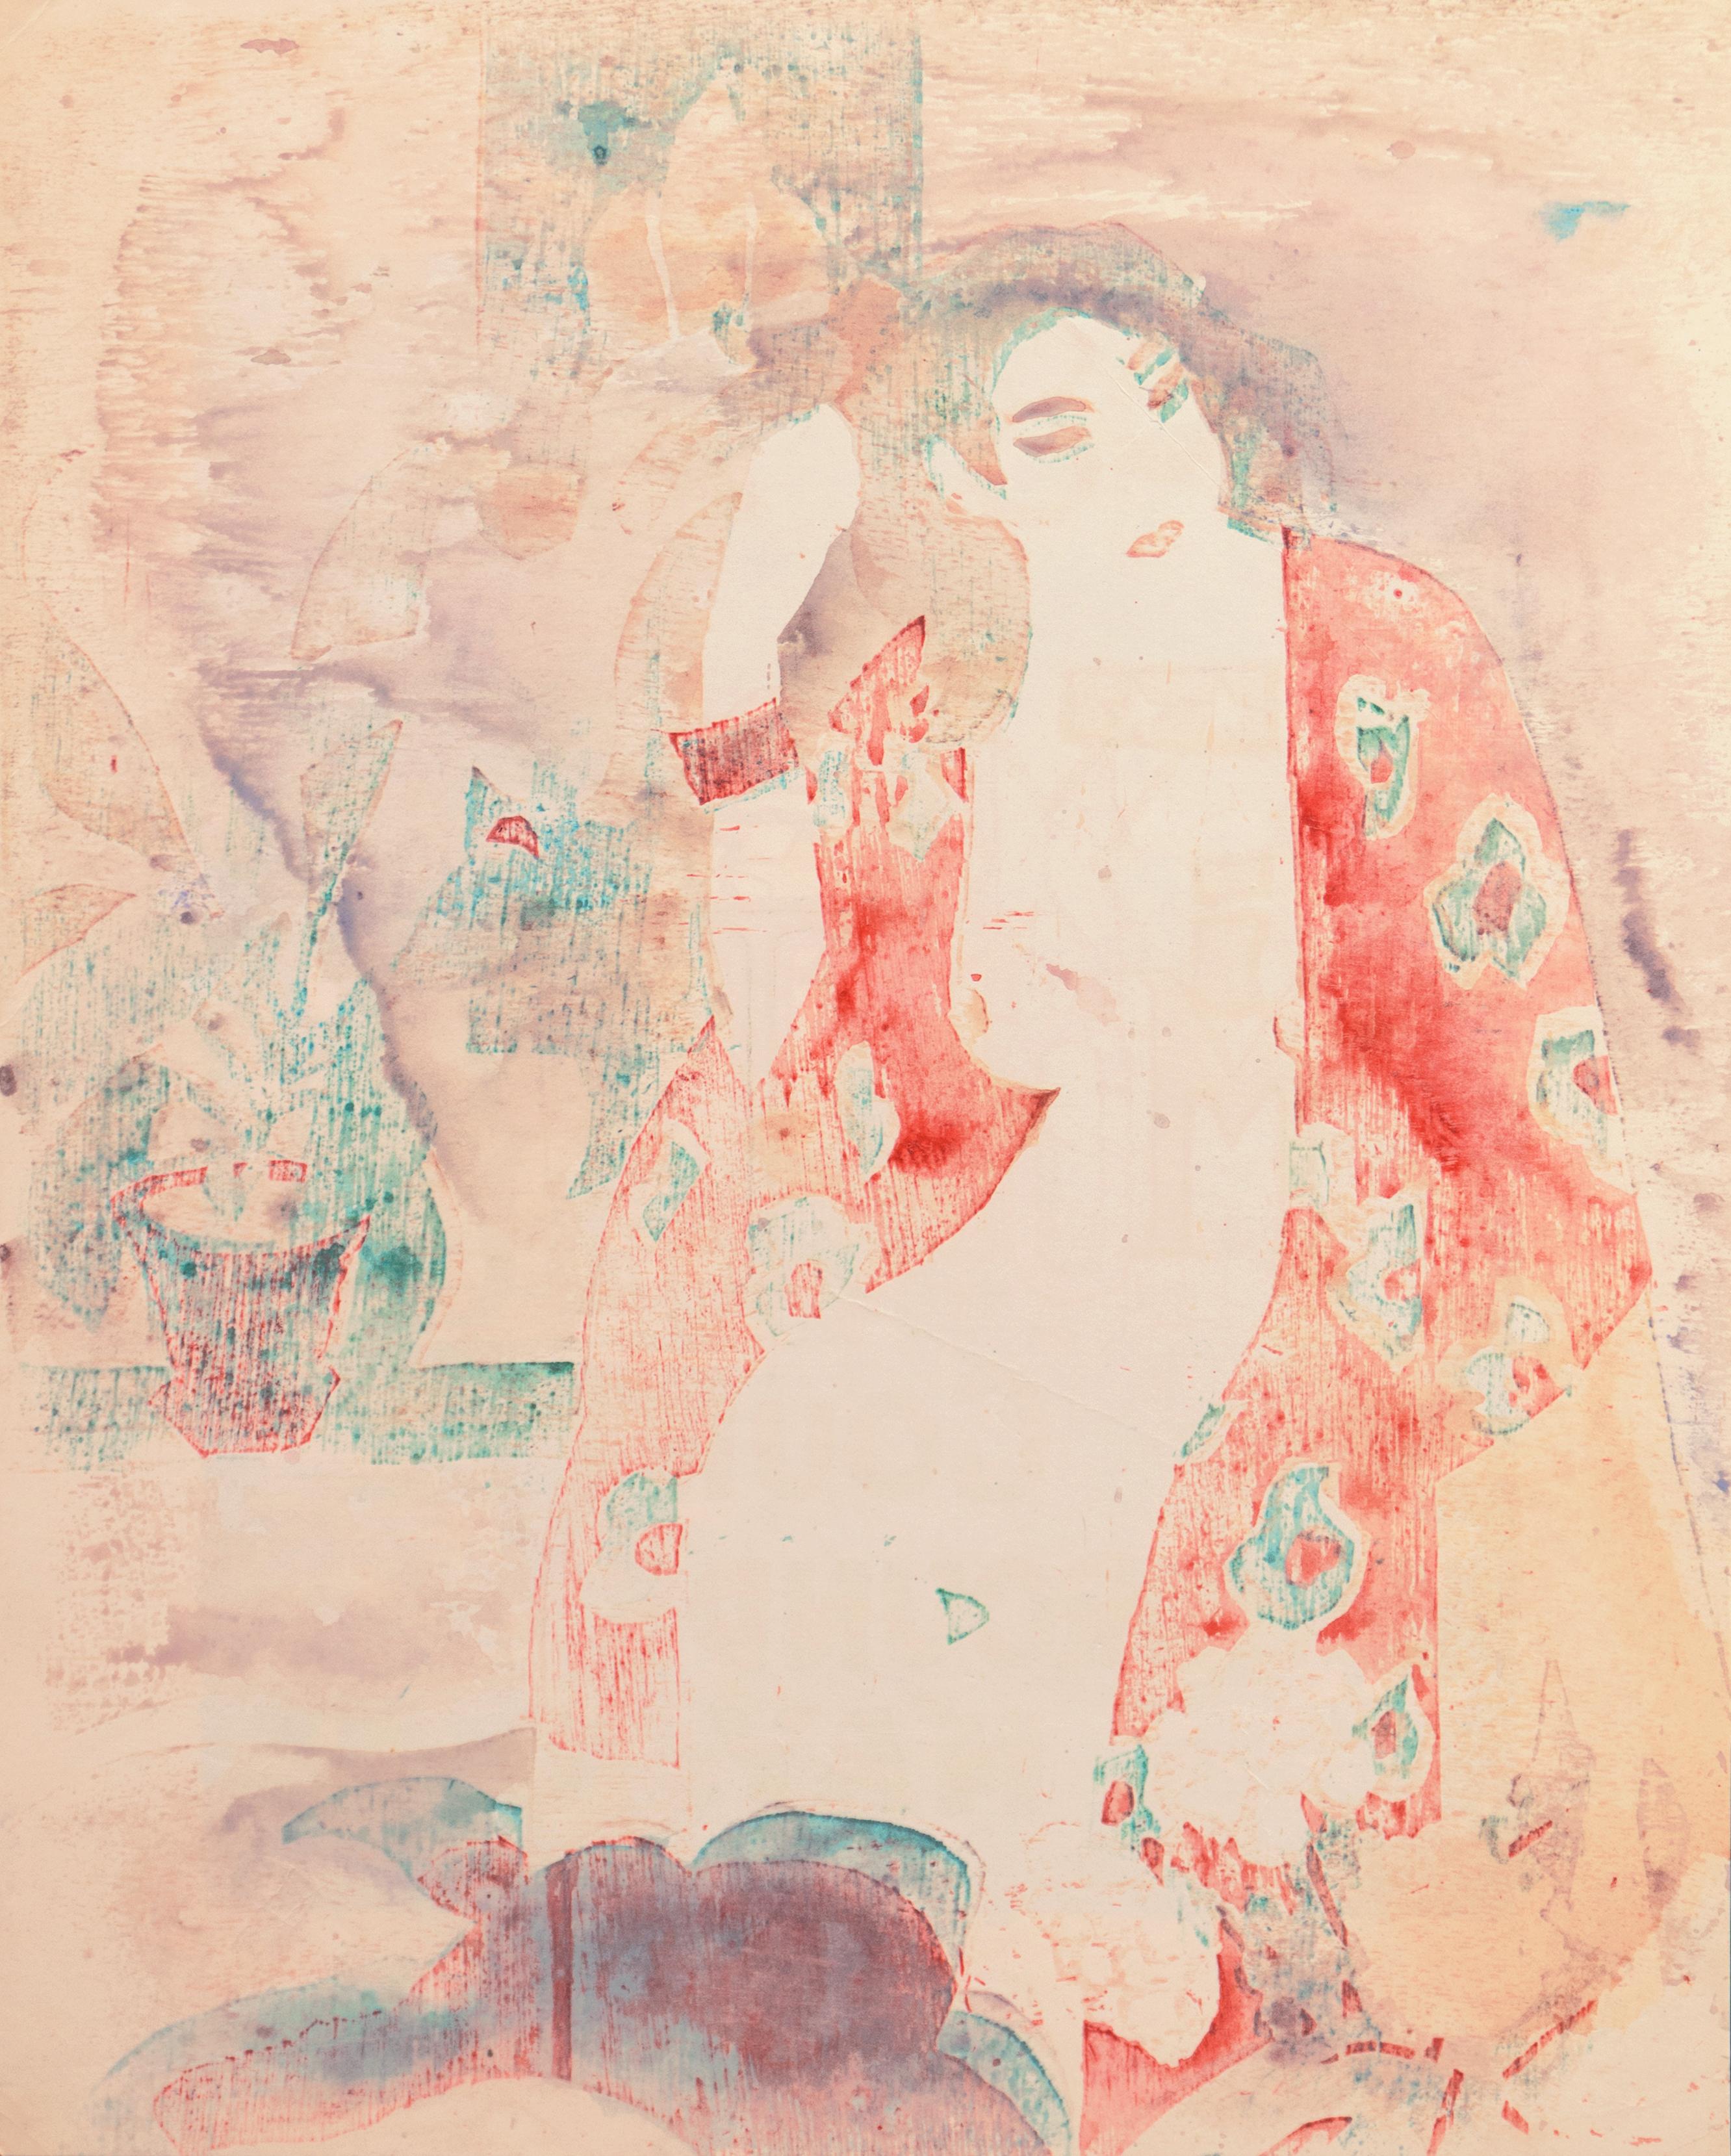 Victor Di Gesu Figurative Print - 'The Red Kimono', Paris, Louvre, Academie Chaumiere, California, SFAA, LACMA